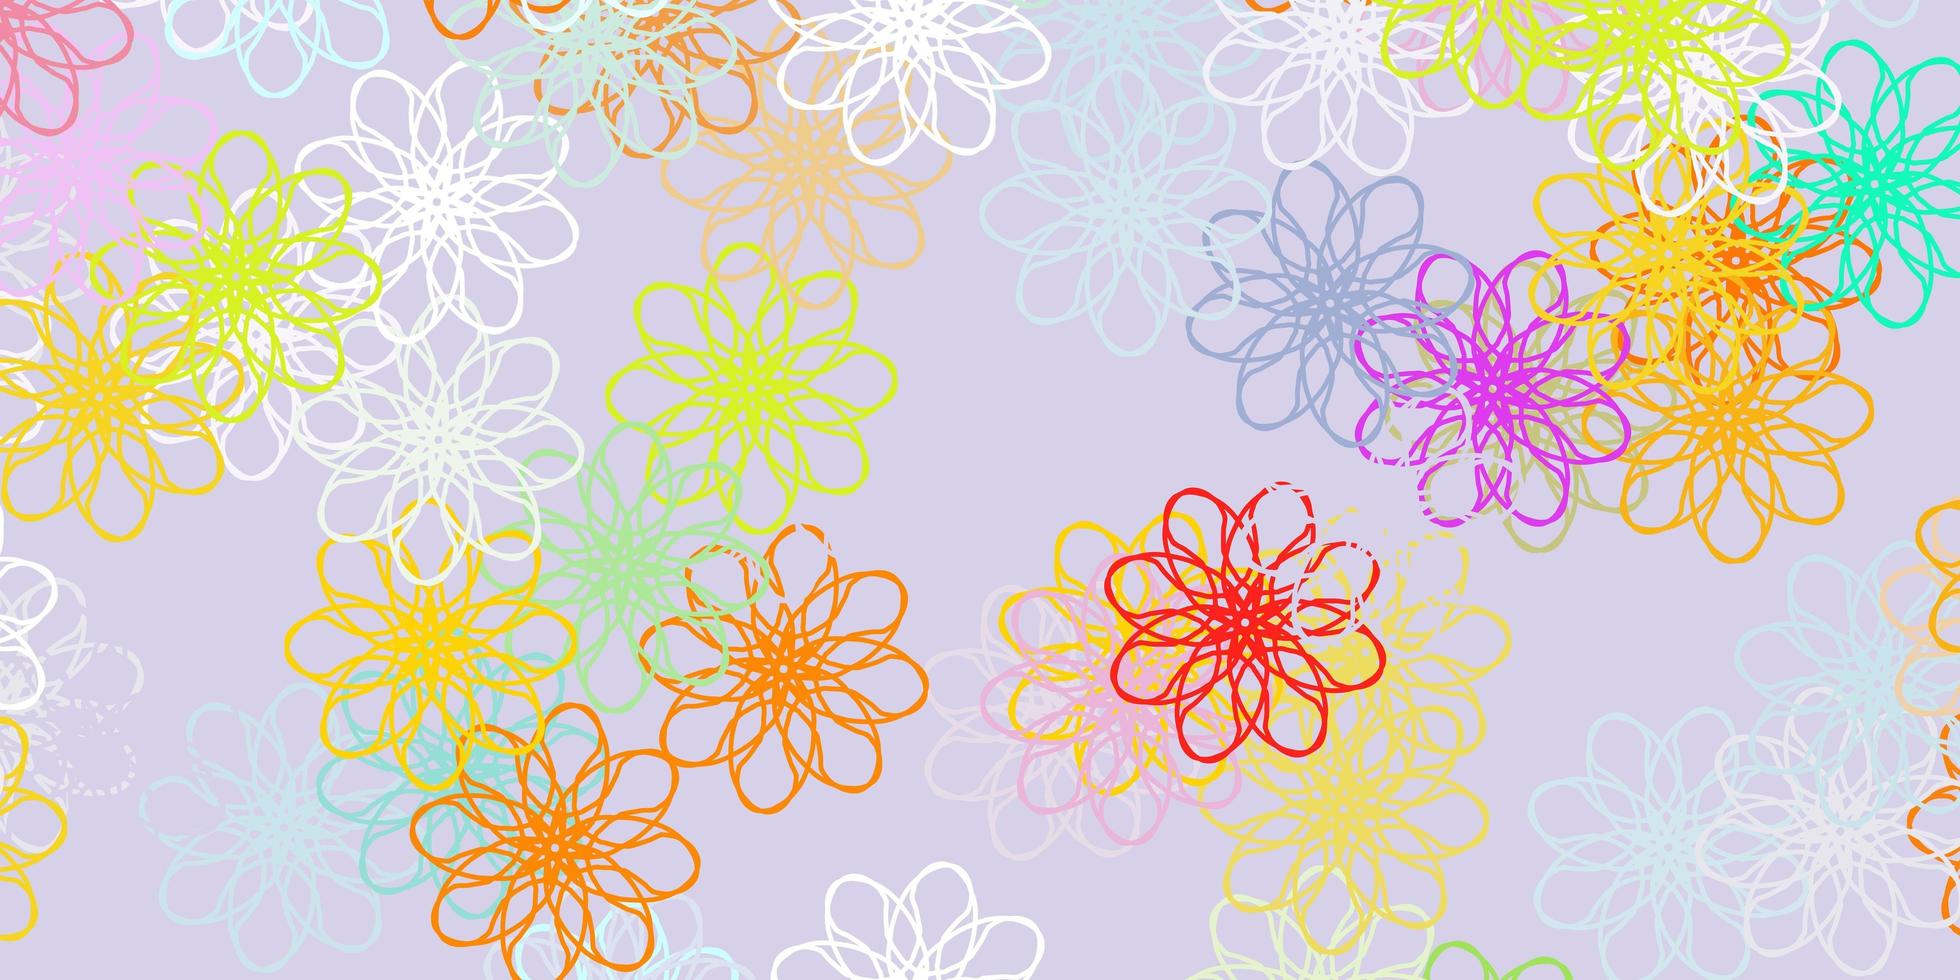 oeuvre naturelle de vecteur multicolore clair avec des fleurs.